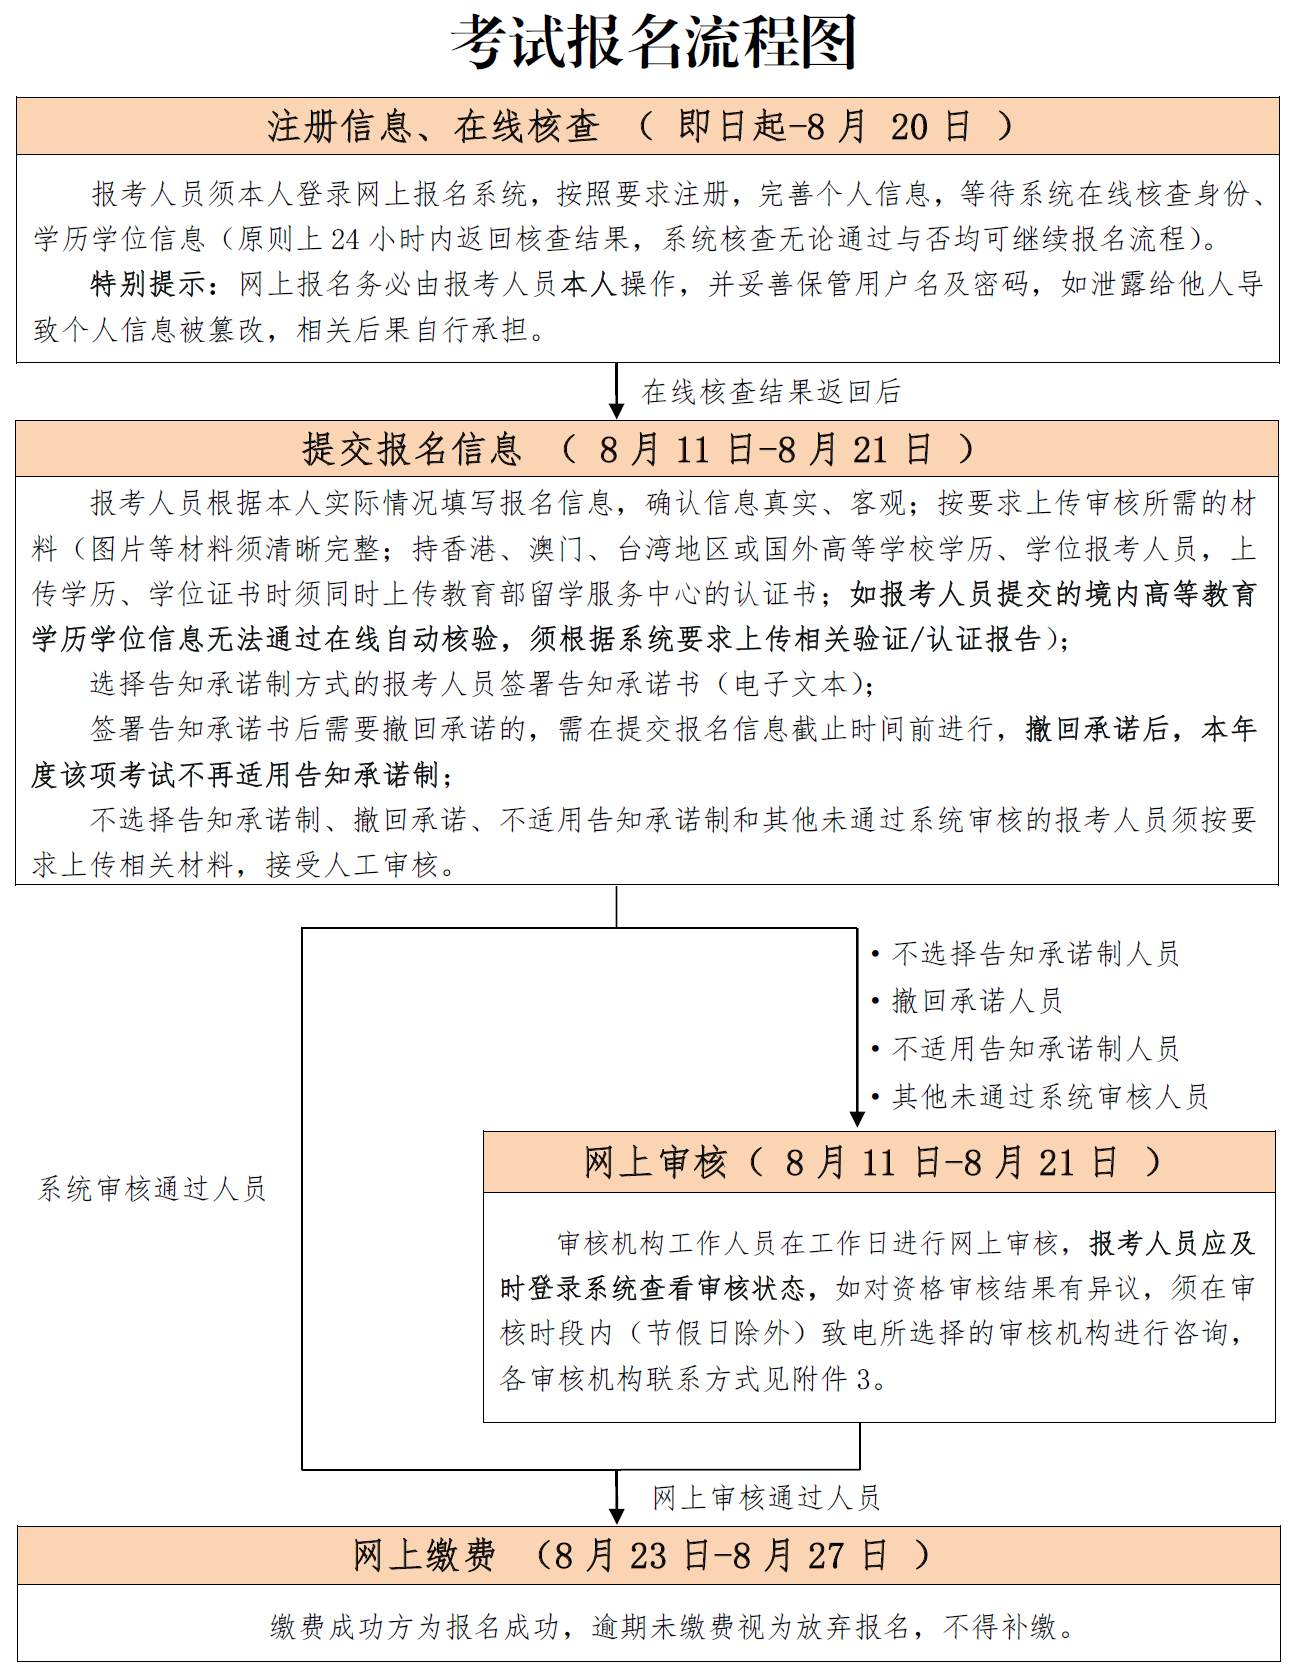 北京2023年初中级经济师报名流程